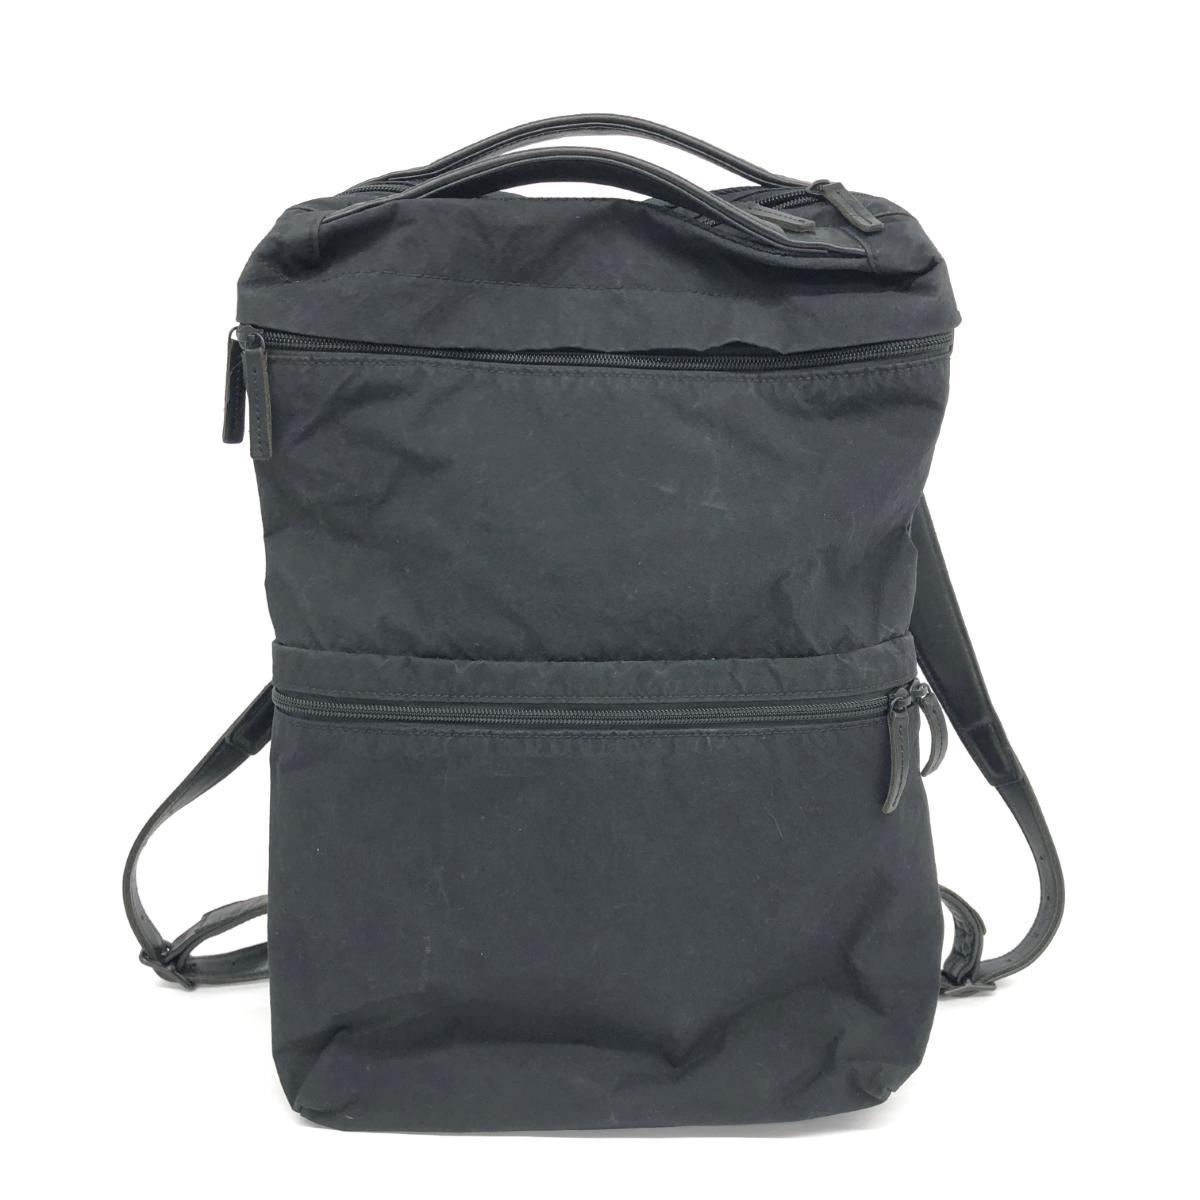 POSTALCO ポスタルコ リュック ブラック ナイロン スリーパック ユニセックス リュックサック バックパック bag 鞄